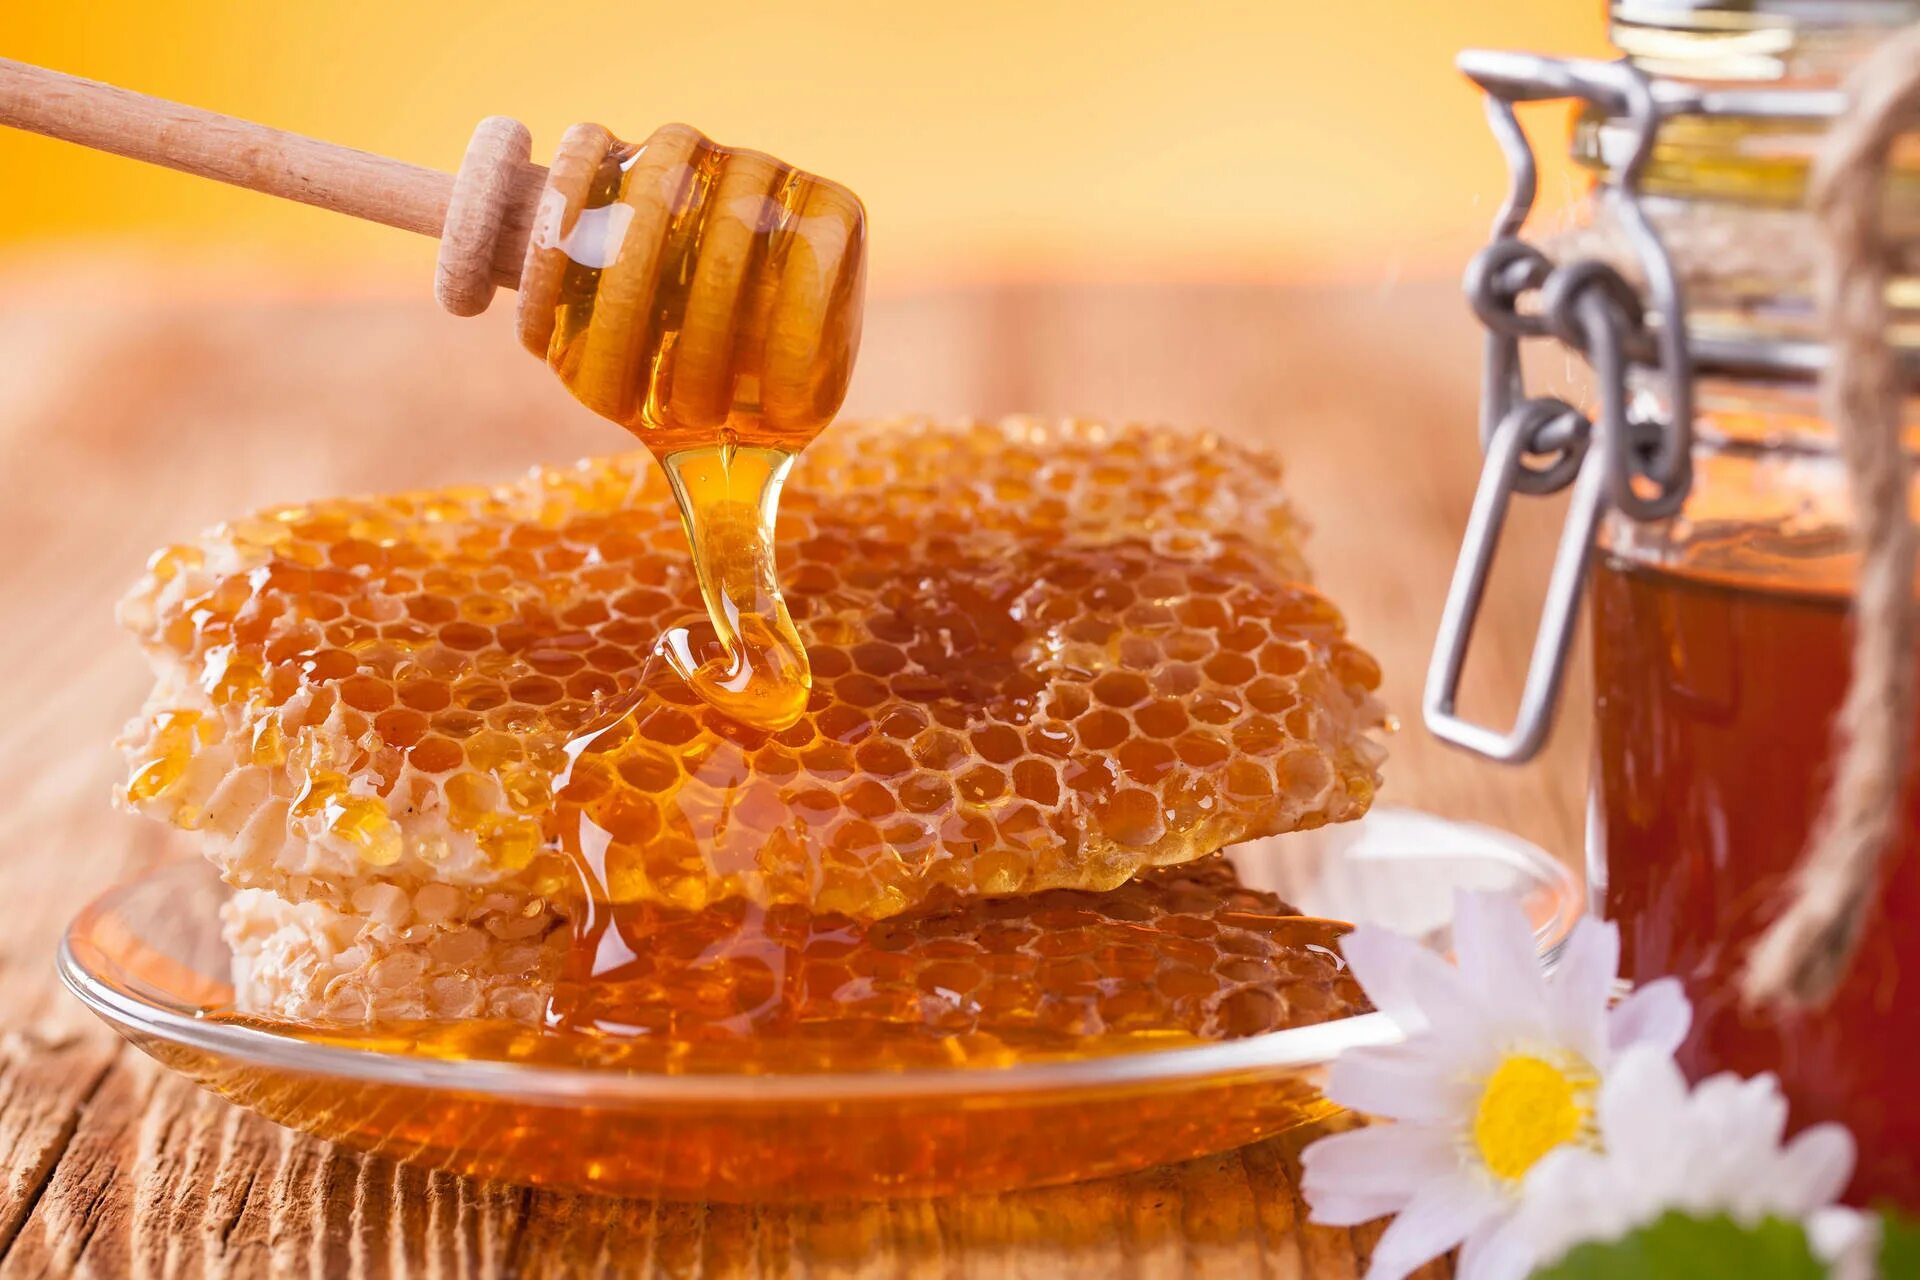 Honey com. Пчелиный мёд. Мёд в сотах. Соты меда. Фестиваль меда.